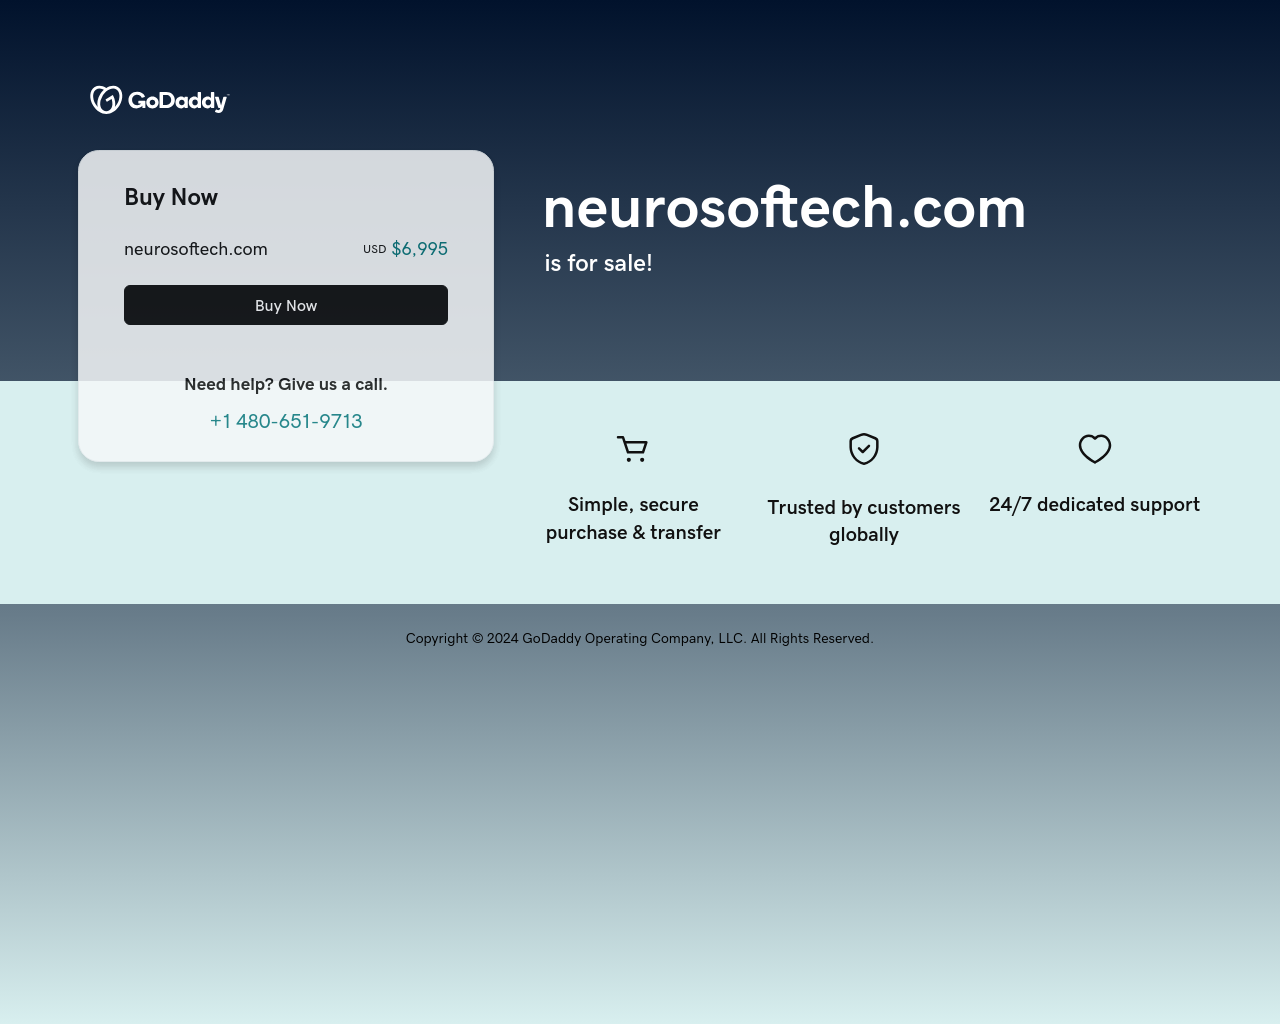 neurosoftech.com